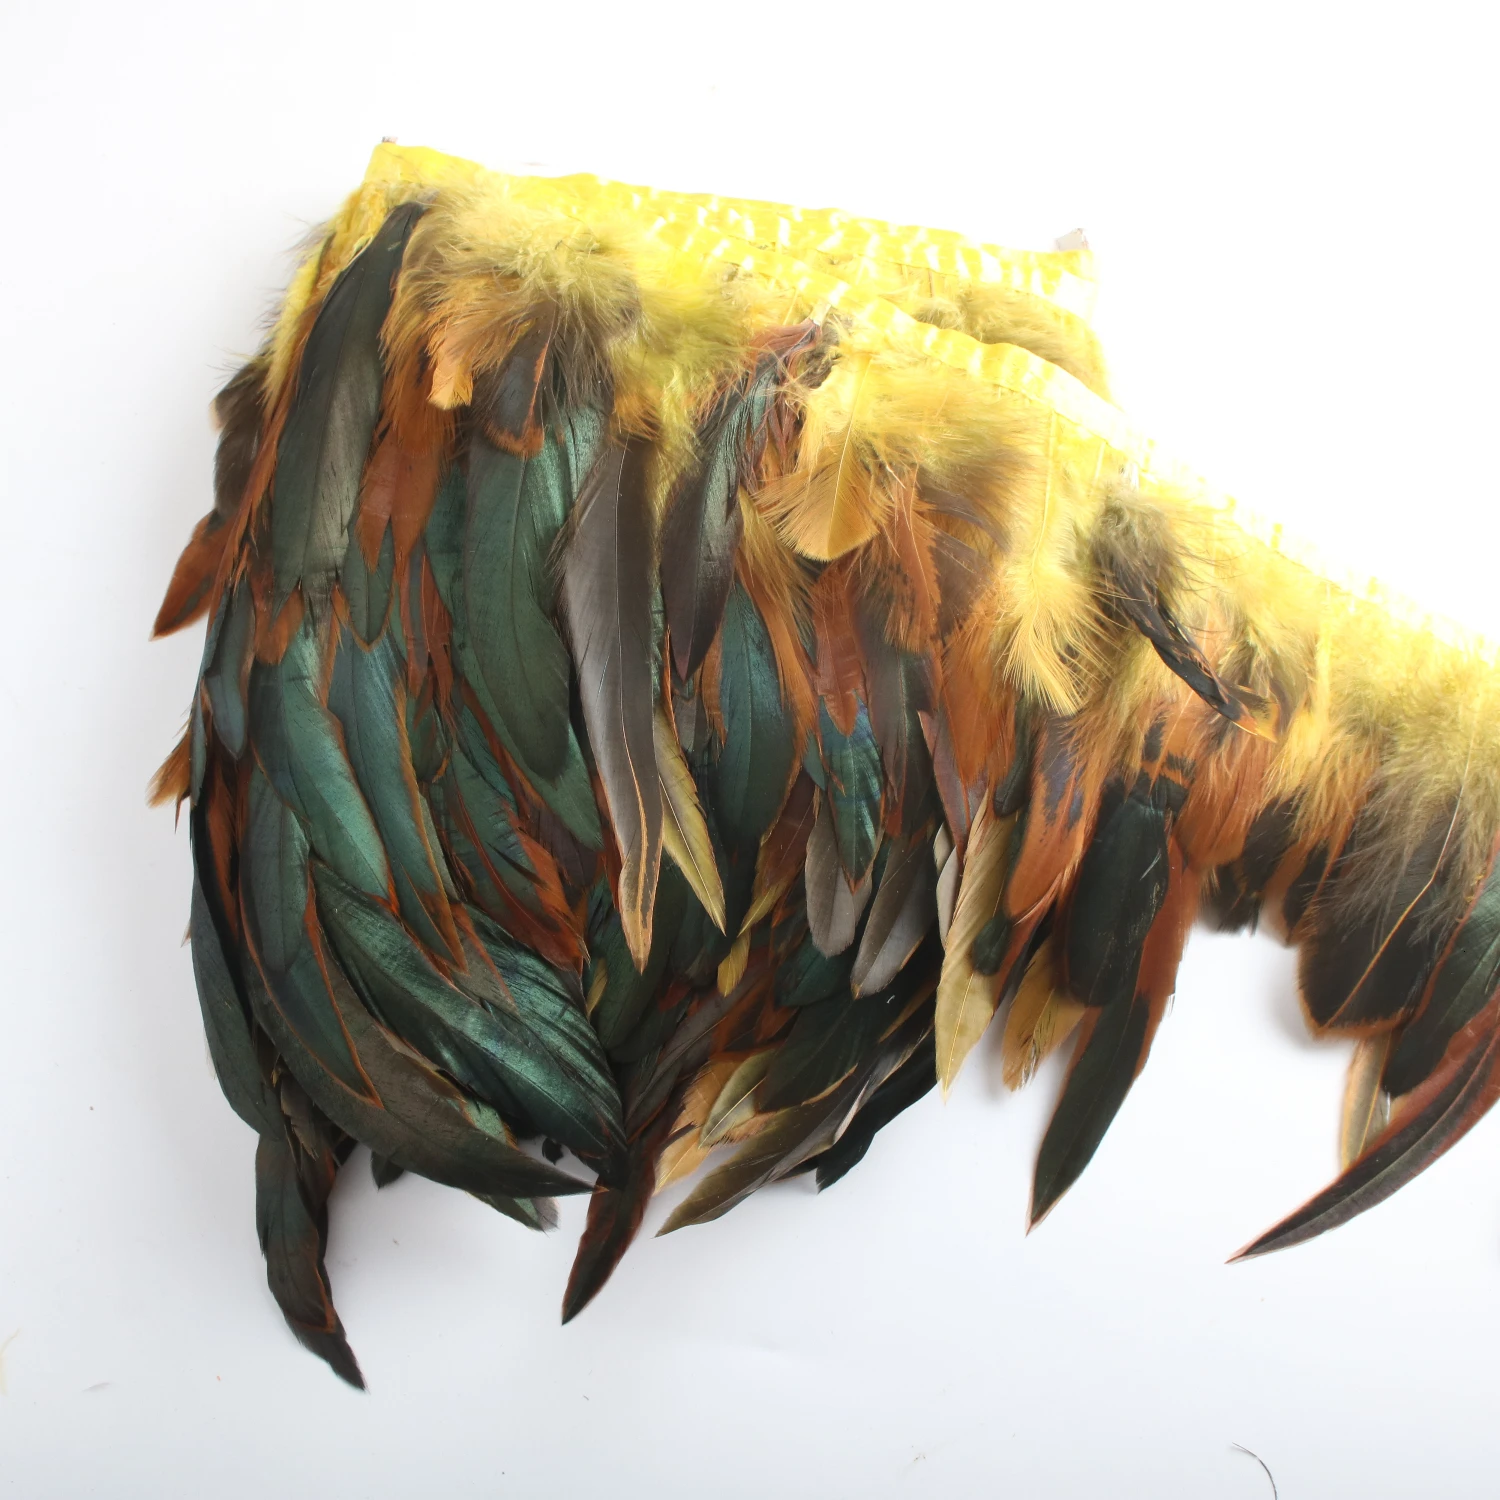 13-18 см натуральный цыпленок с перьями из хвоста петуха отделка свадебное платье юбка праздничная одежда украшения для самодельного изготовления перья